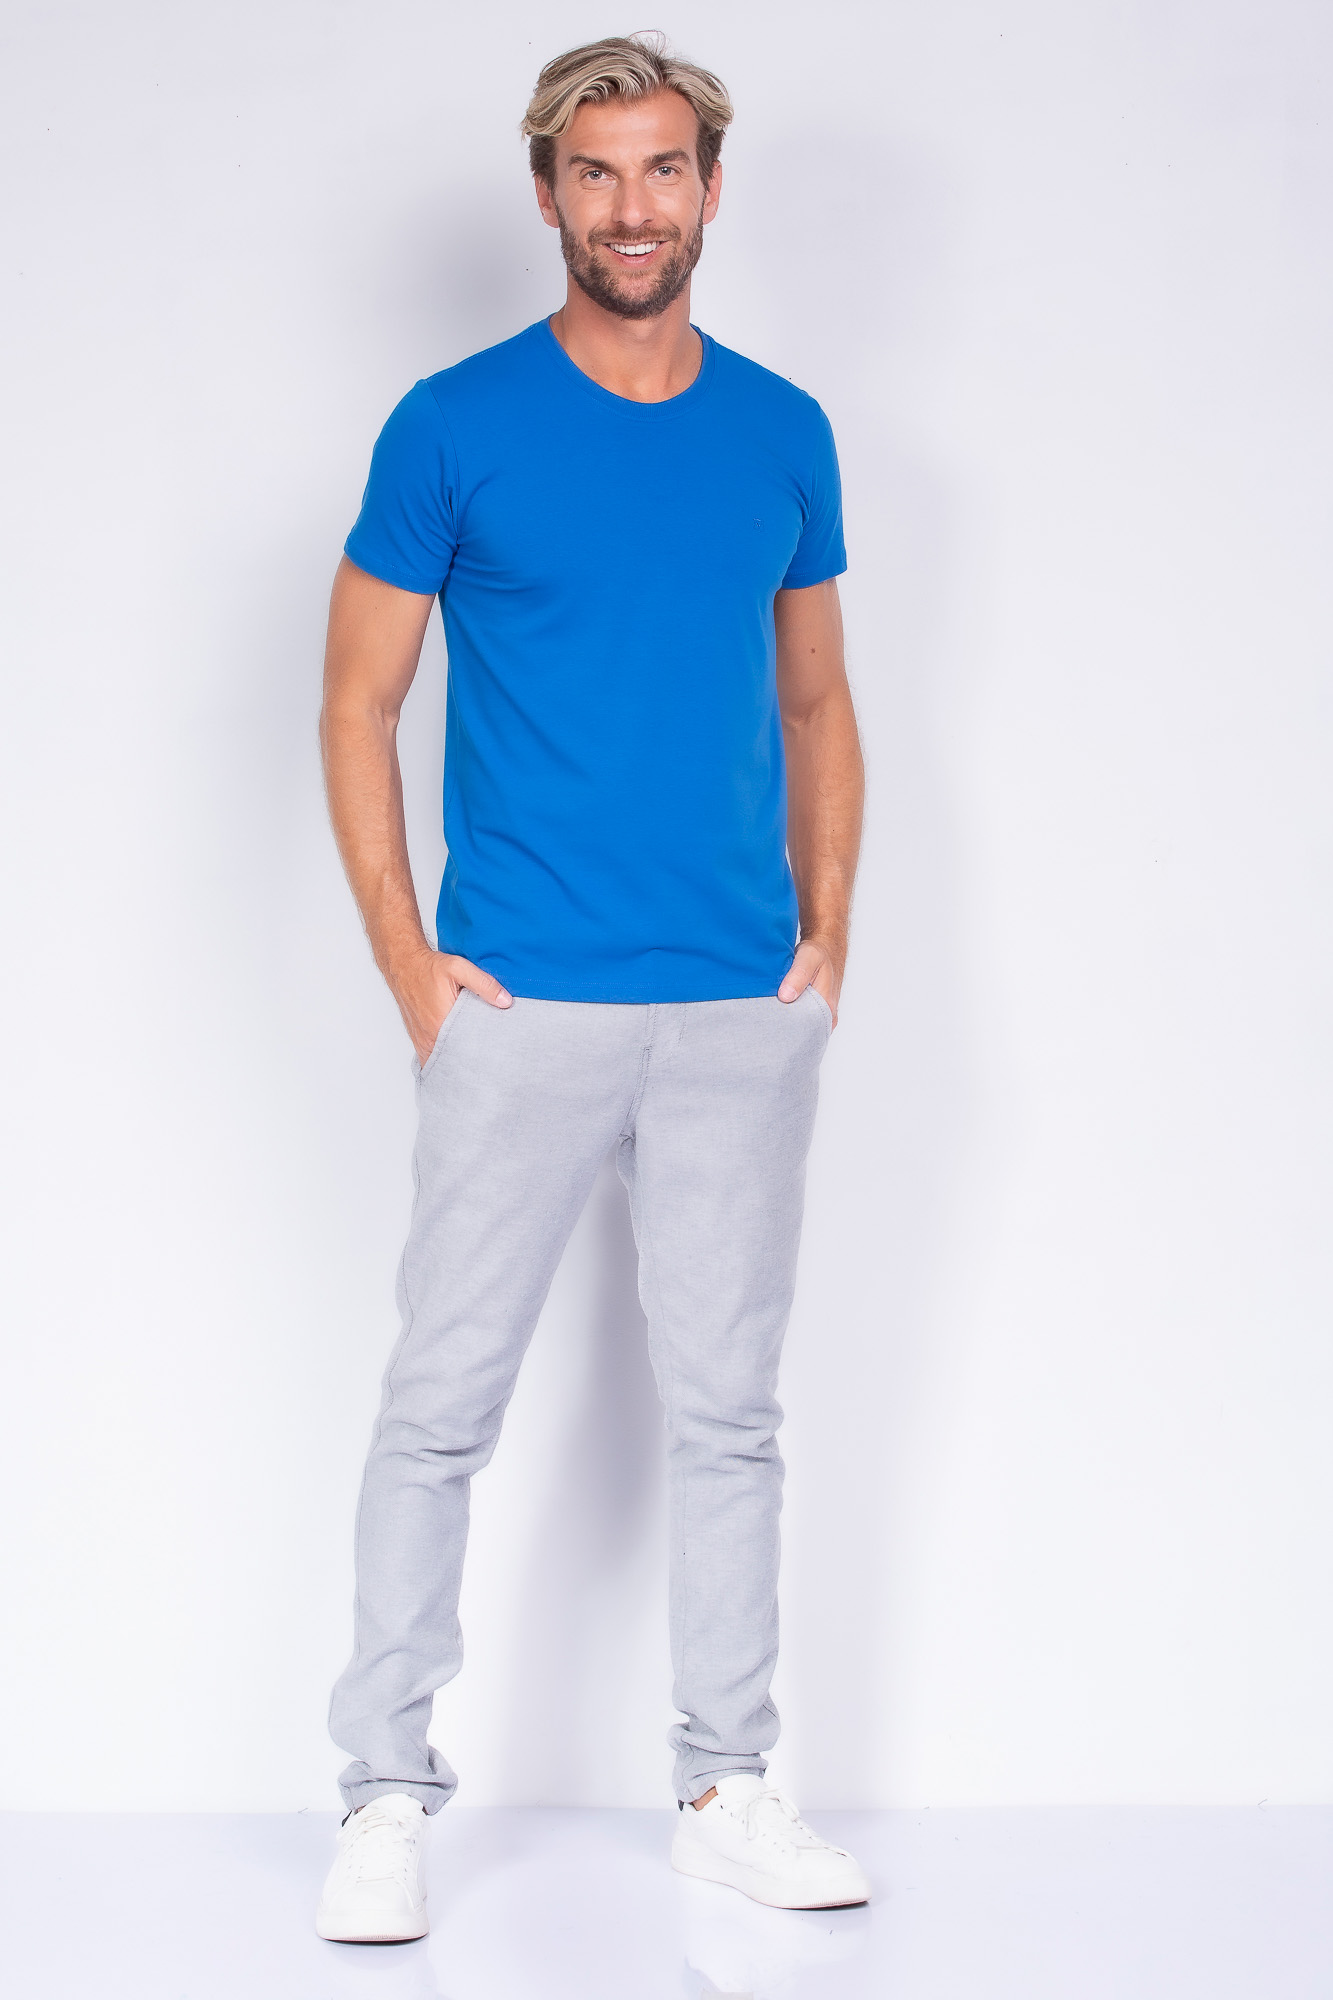 Camiseta cottonFlex azul